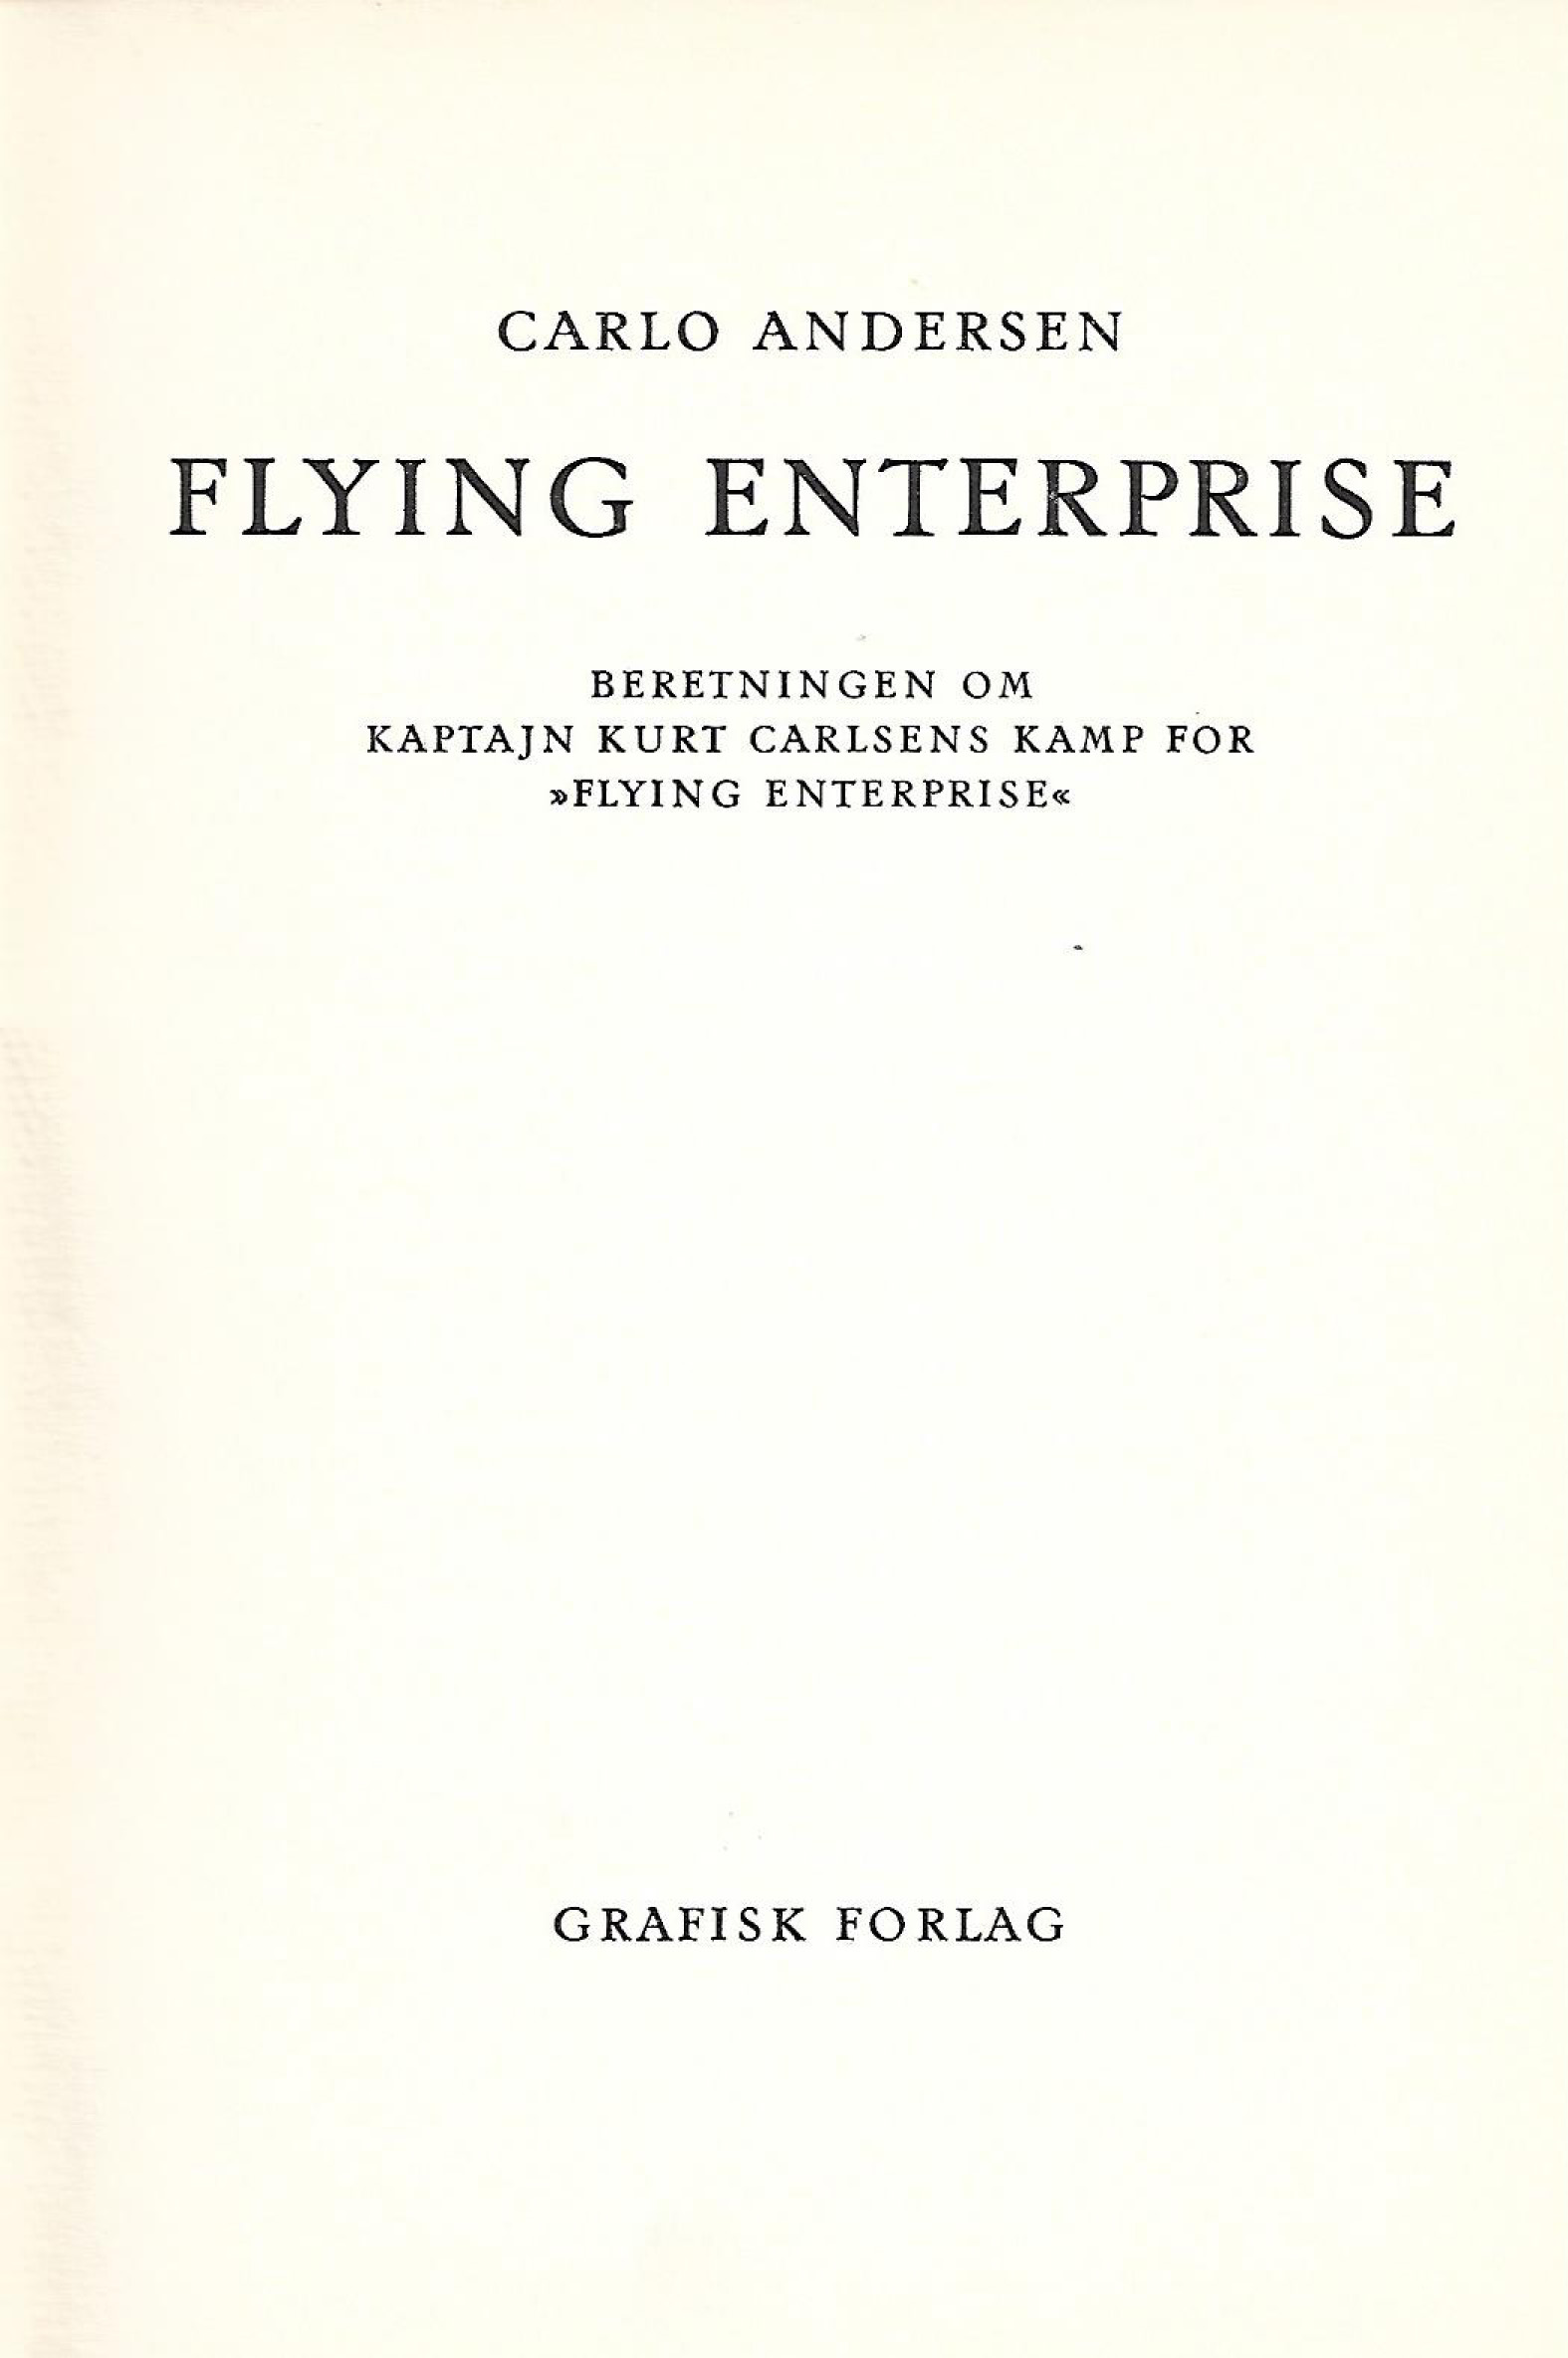 Flying Enterprise - Beretningen om kaptajn Carlsen kamp for Flying Ent